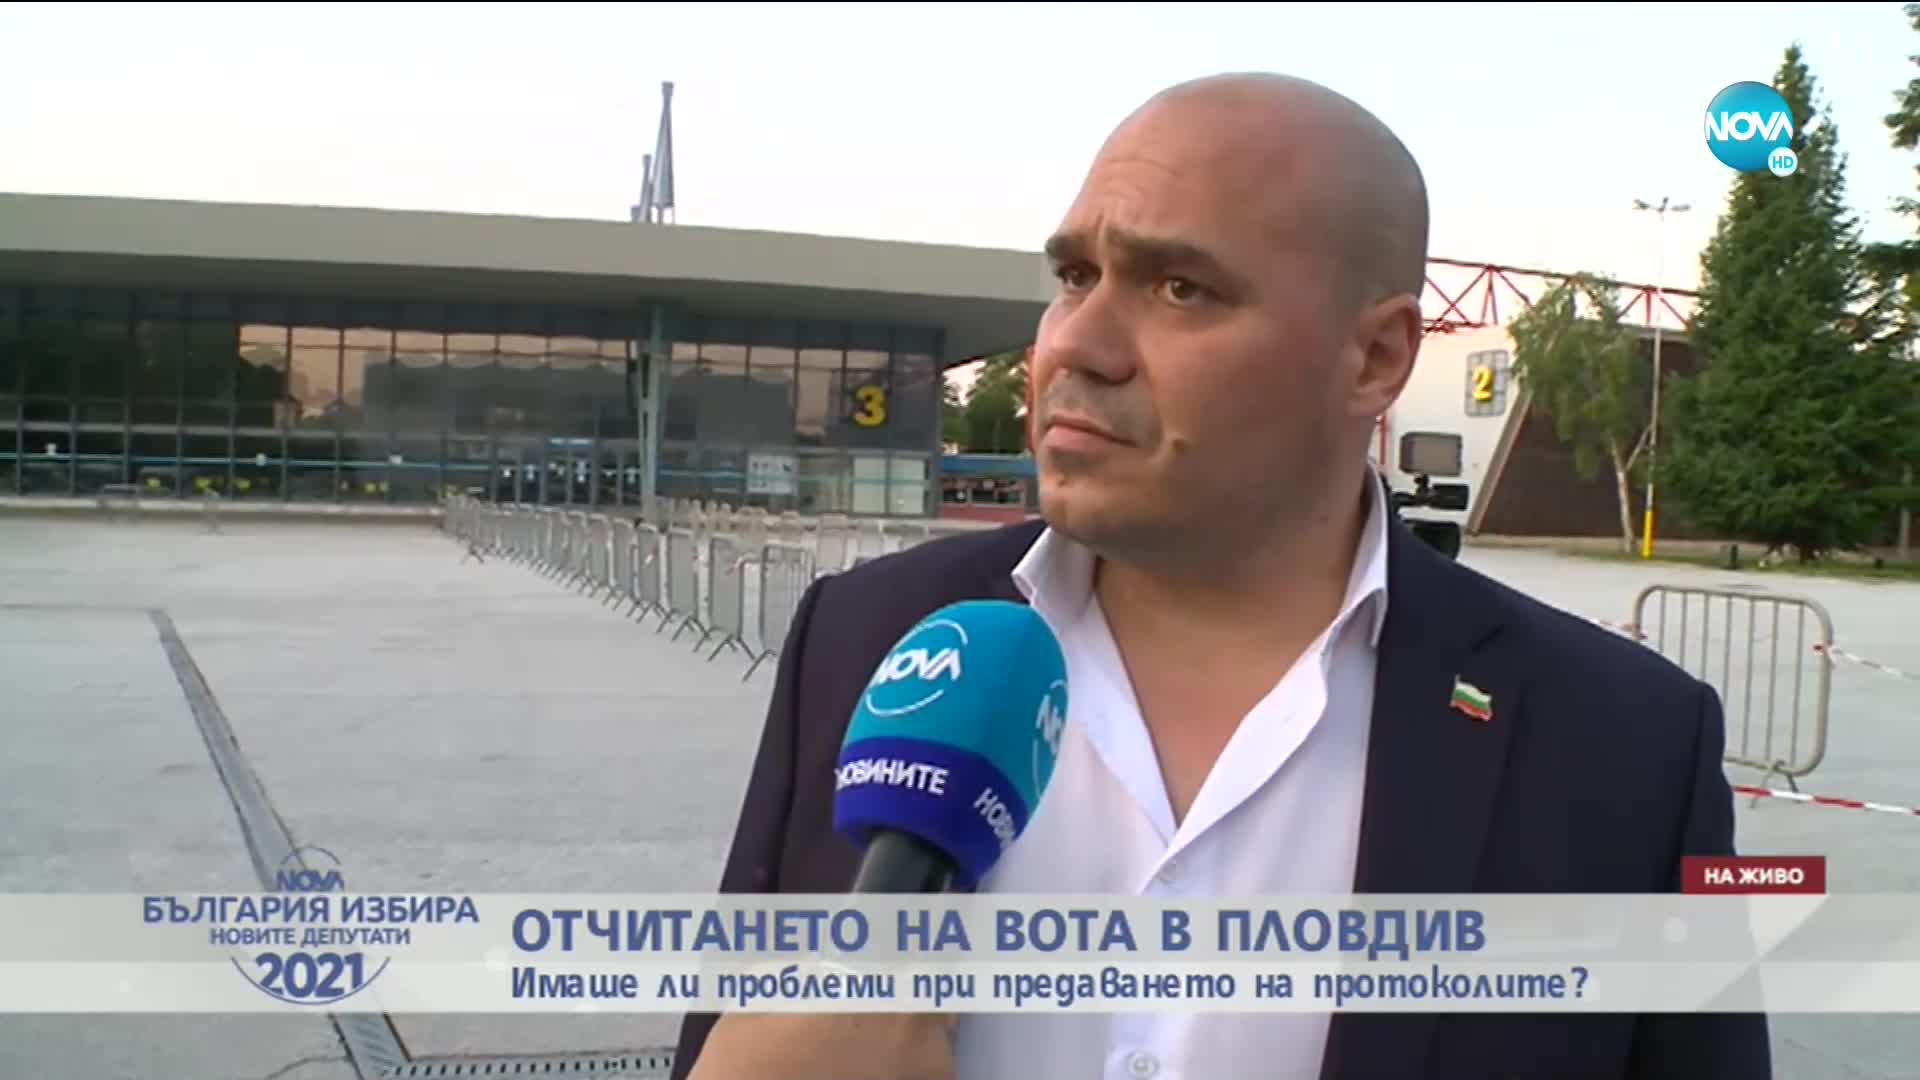 Имаше ли проблеми при отчитането на вота в Пловдив